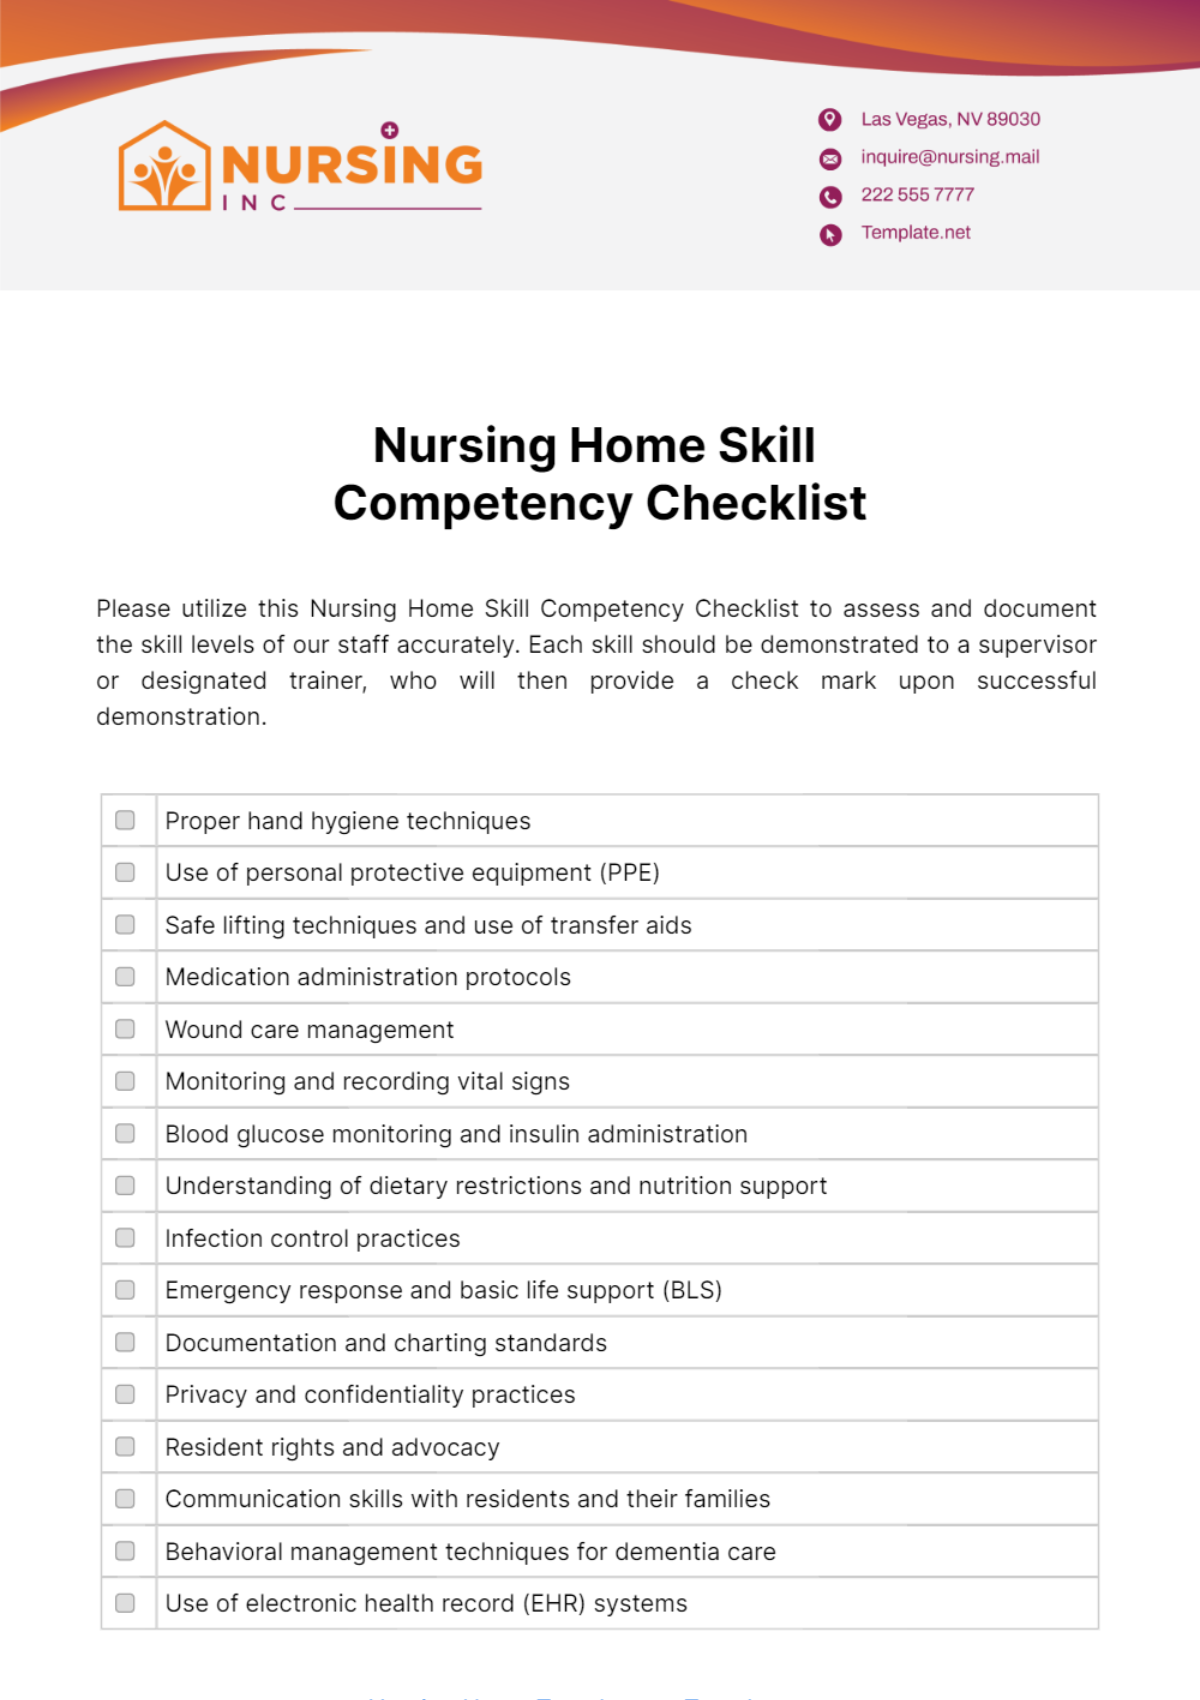 Nursing Home Skill Competency Checklist Template